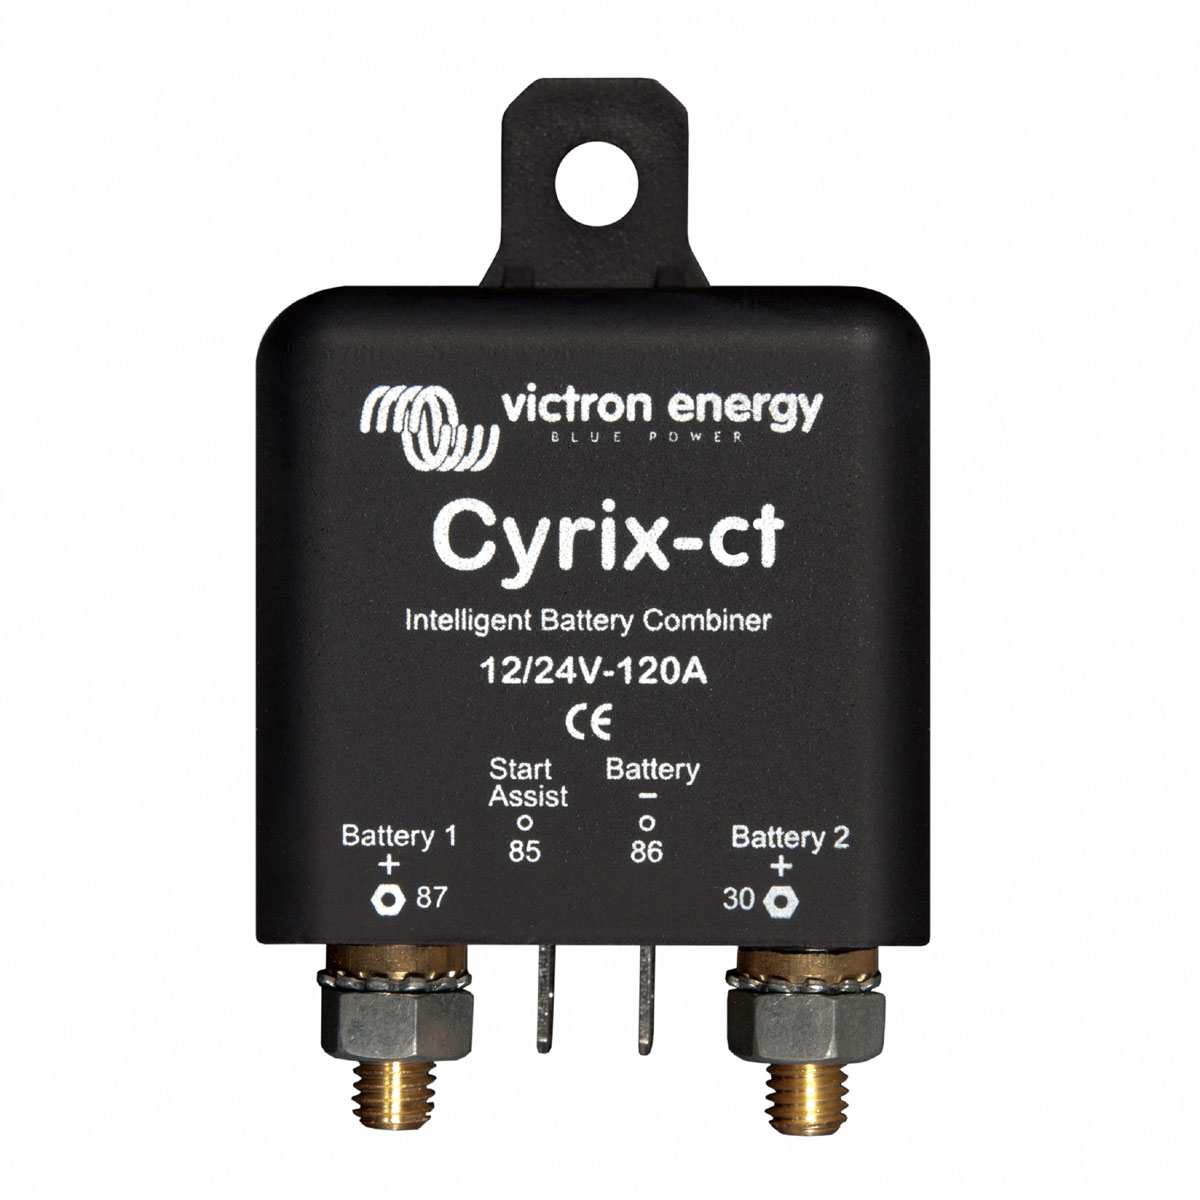 Cyrix-ct 12/24V-120A Combiner